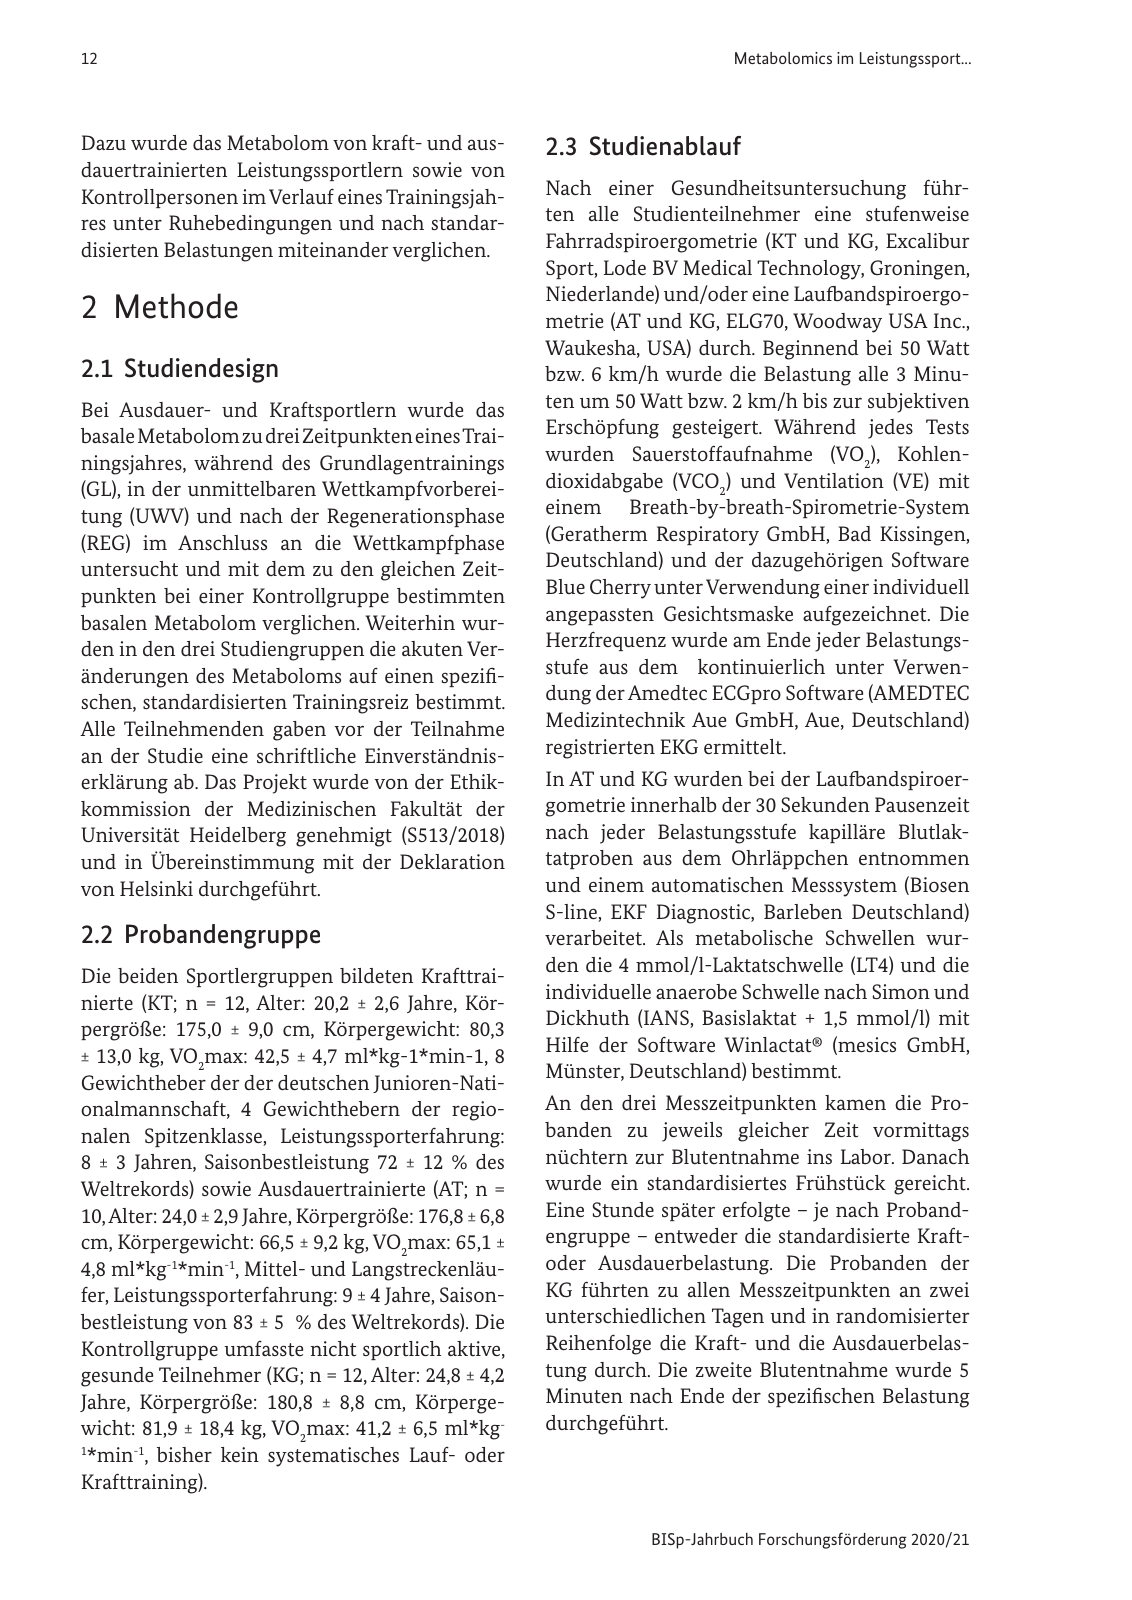 Vorschau BISp-Jahrbuch 2020/21 Seite 14